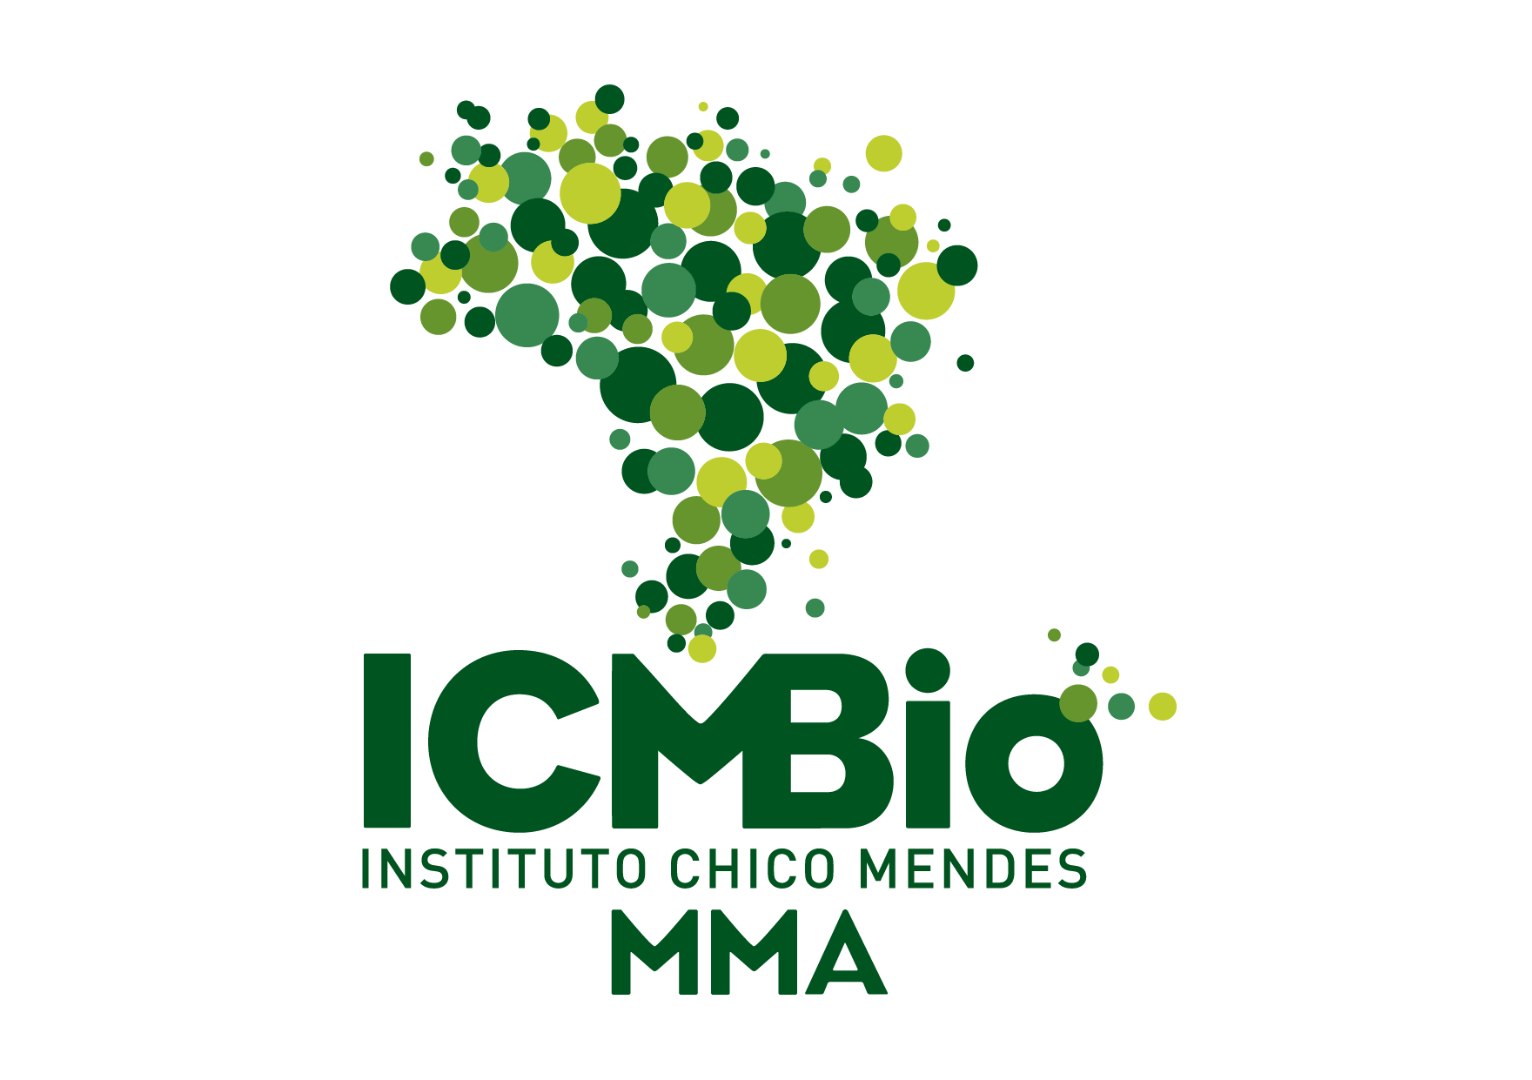 Logo_ICMBio_2011_Colorida.png